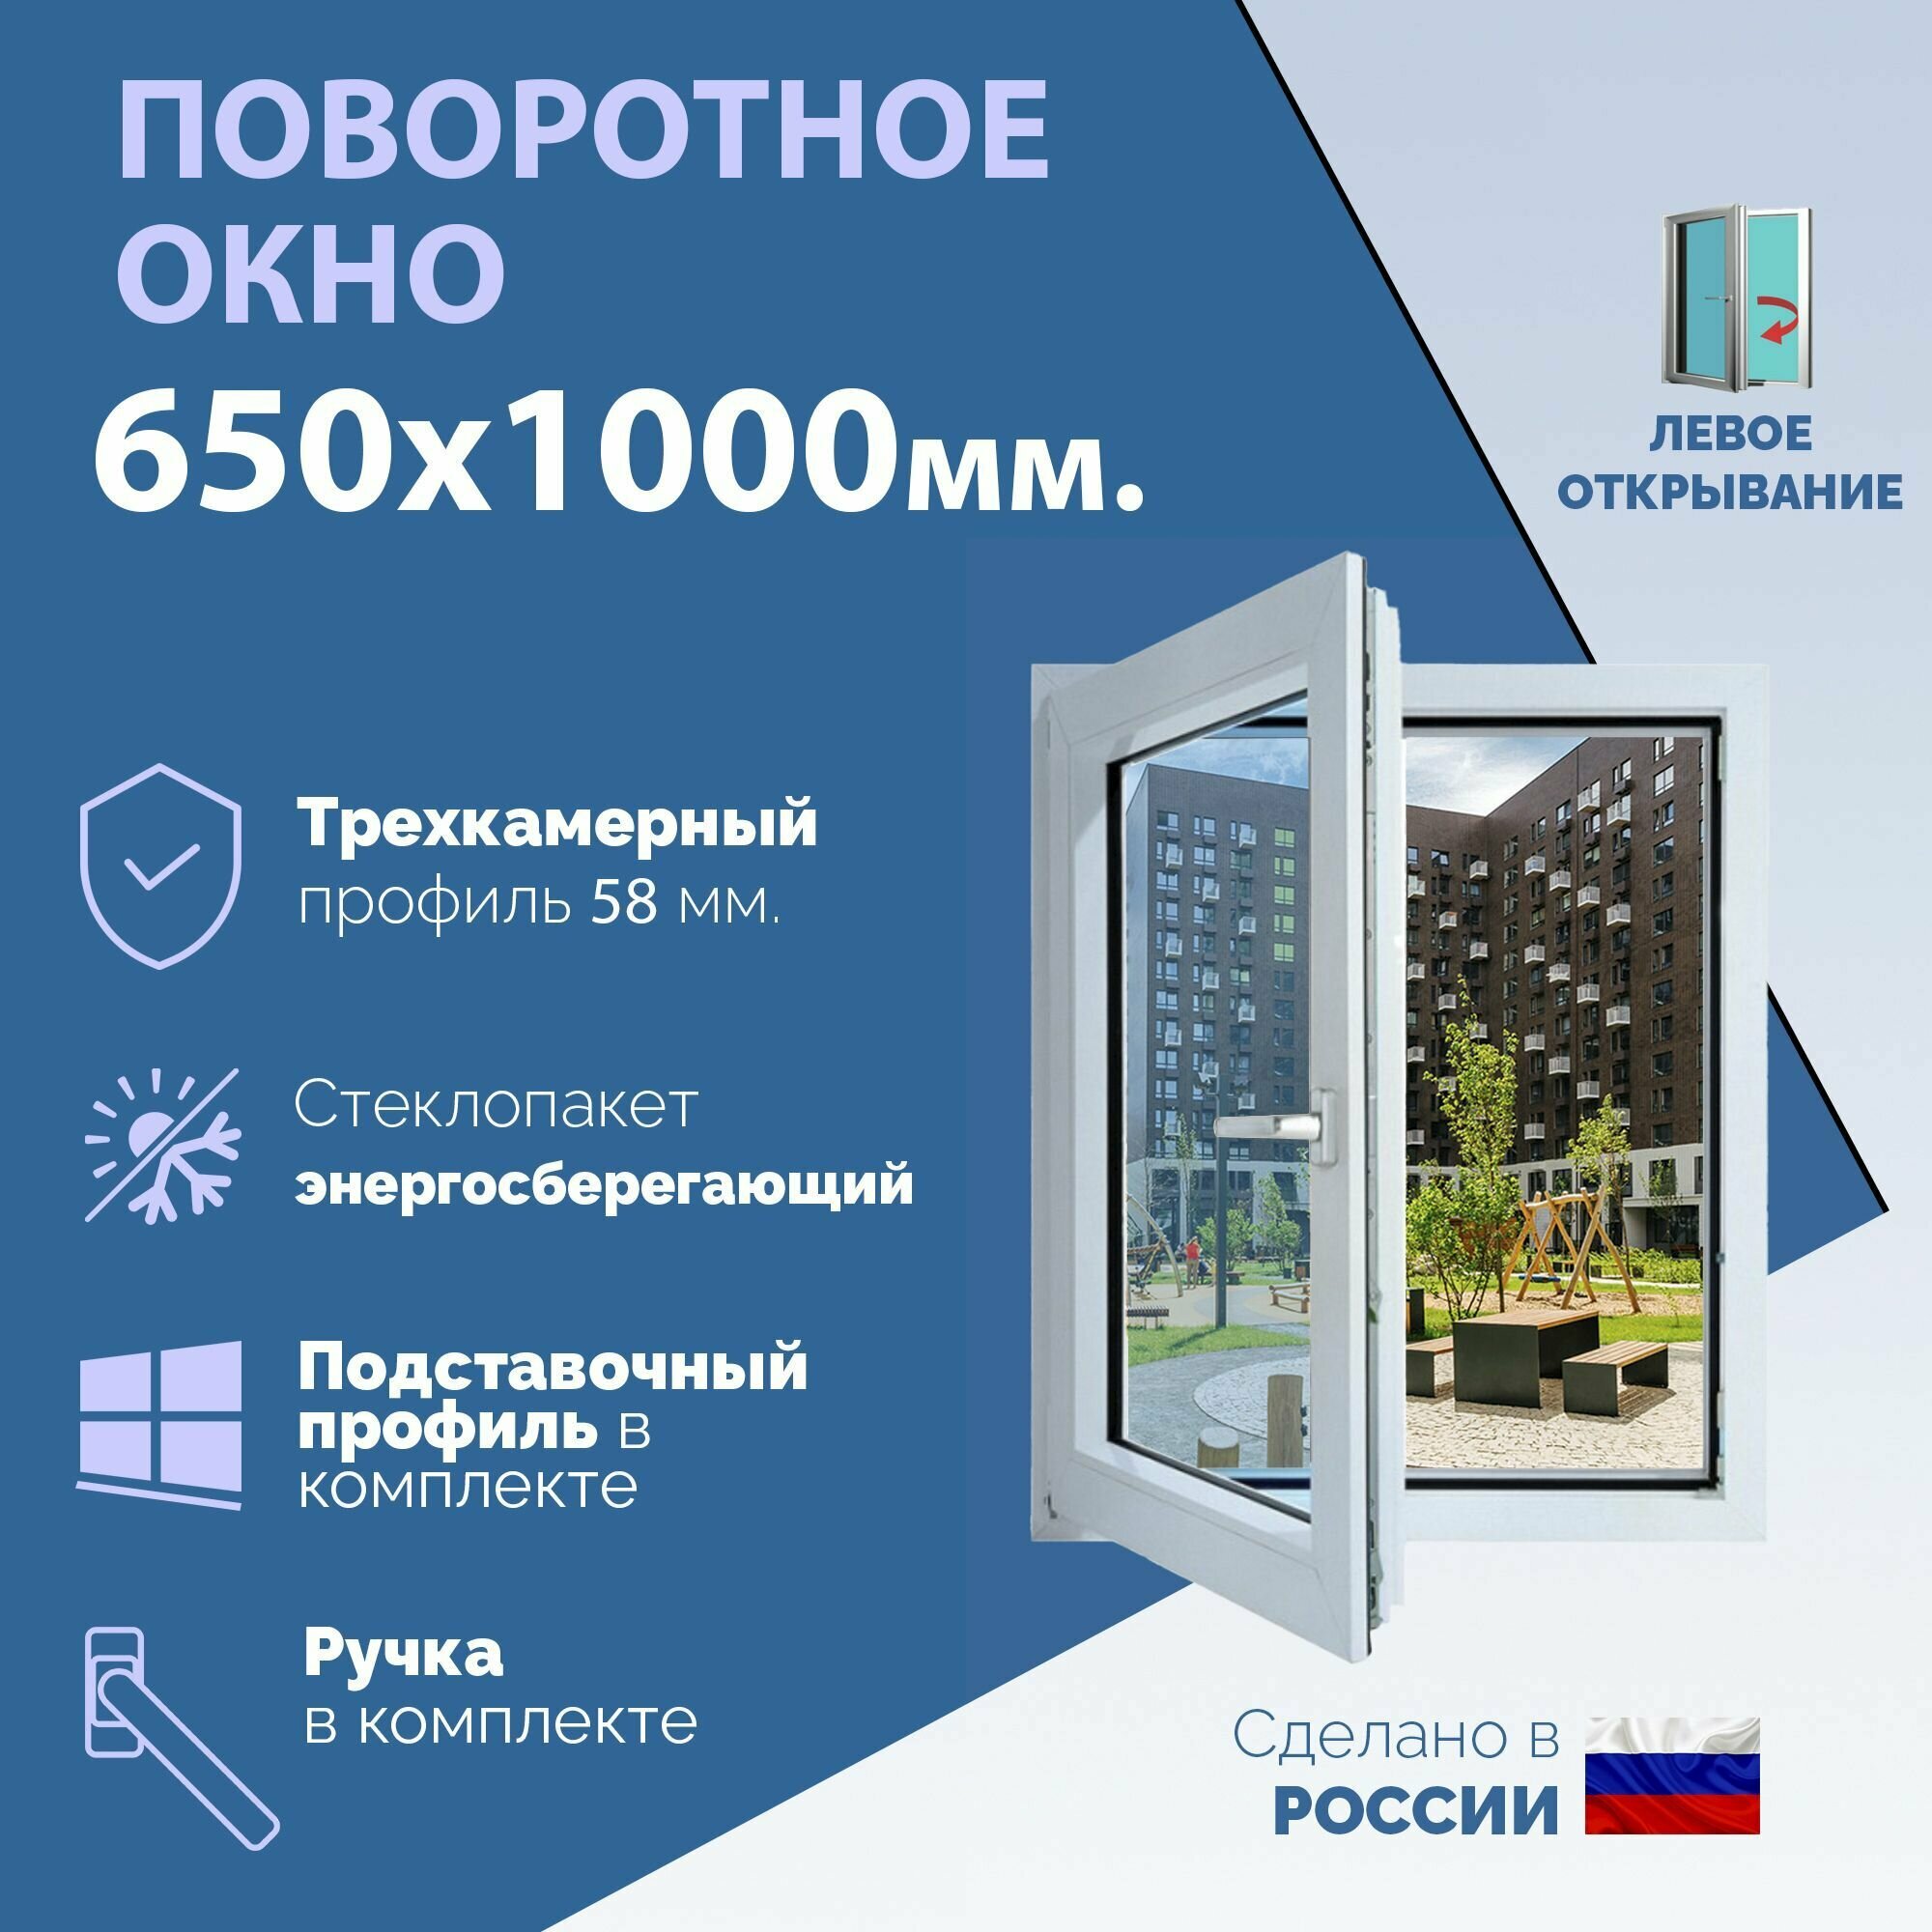 Поворотное ПВХ окно левое (ШхВ) 650х1000 мм. (65х100см.) Экологичный профиль KRAUSS - 58 мм. Энергосберегающий стеклопакет в 2 стекла - 24 мм.